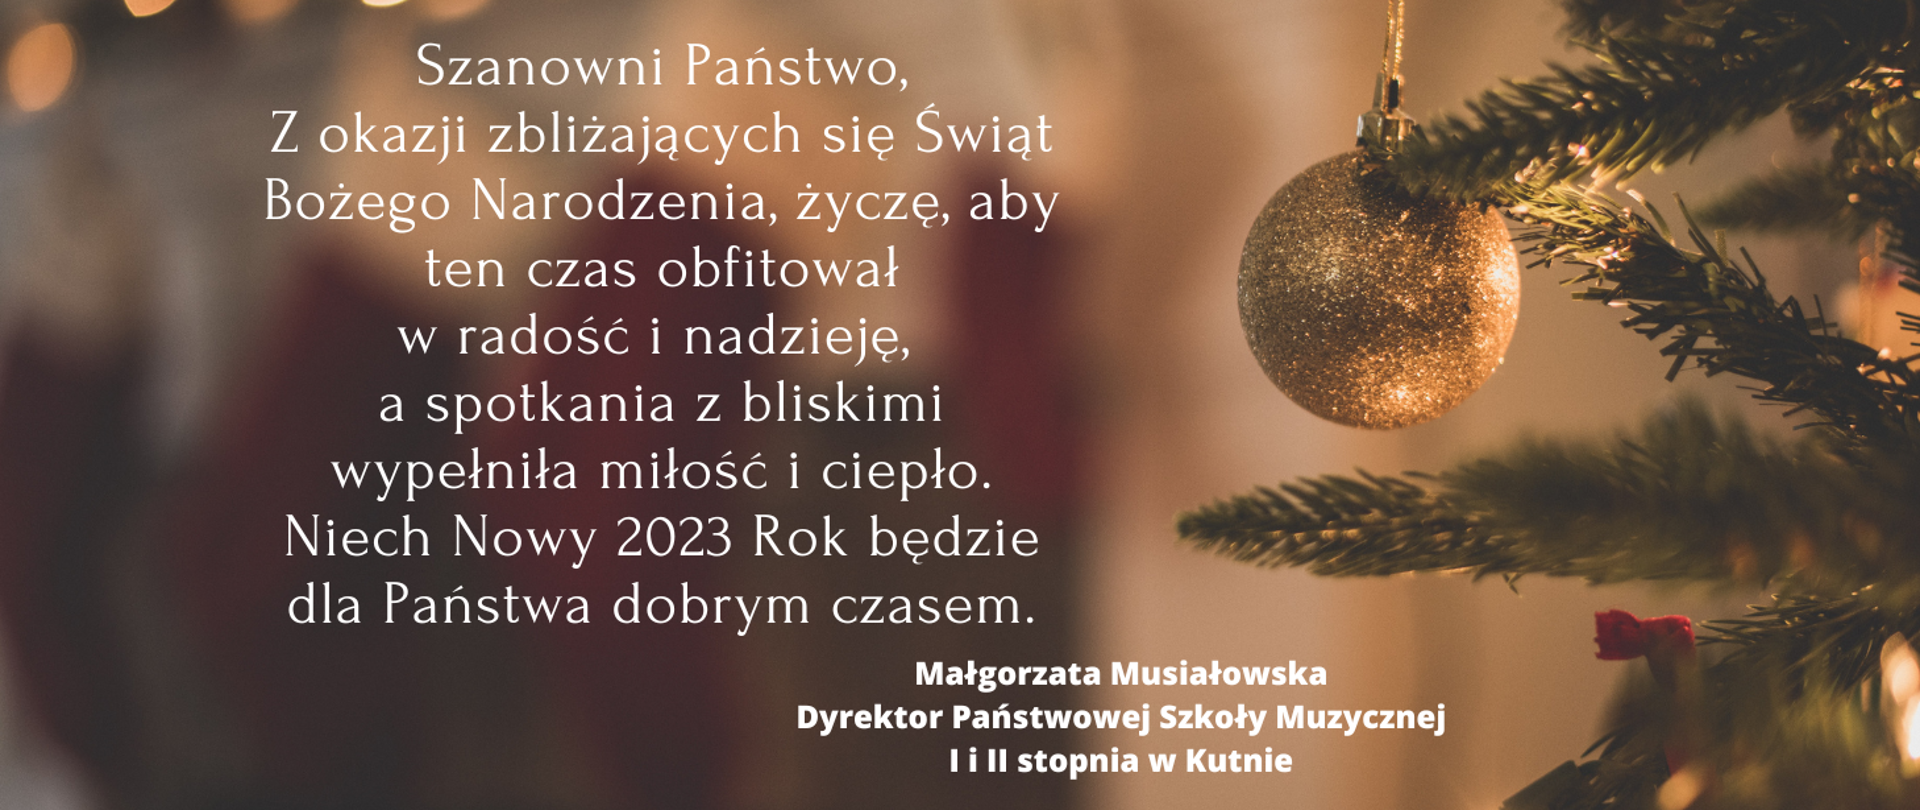 Grafika, brazowe tło na nim gałązka świerku z wiszącą bombką, na tym tle tekst życzeń z okazji zbliżających się świąt Bożego Narodzenia, życzenia kieruje do wszystkich dyrektor szkoły Małgorzata Musiałowska